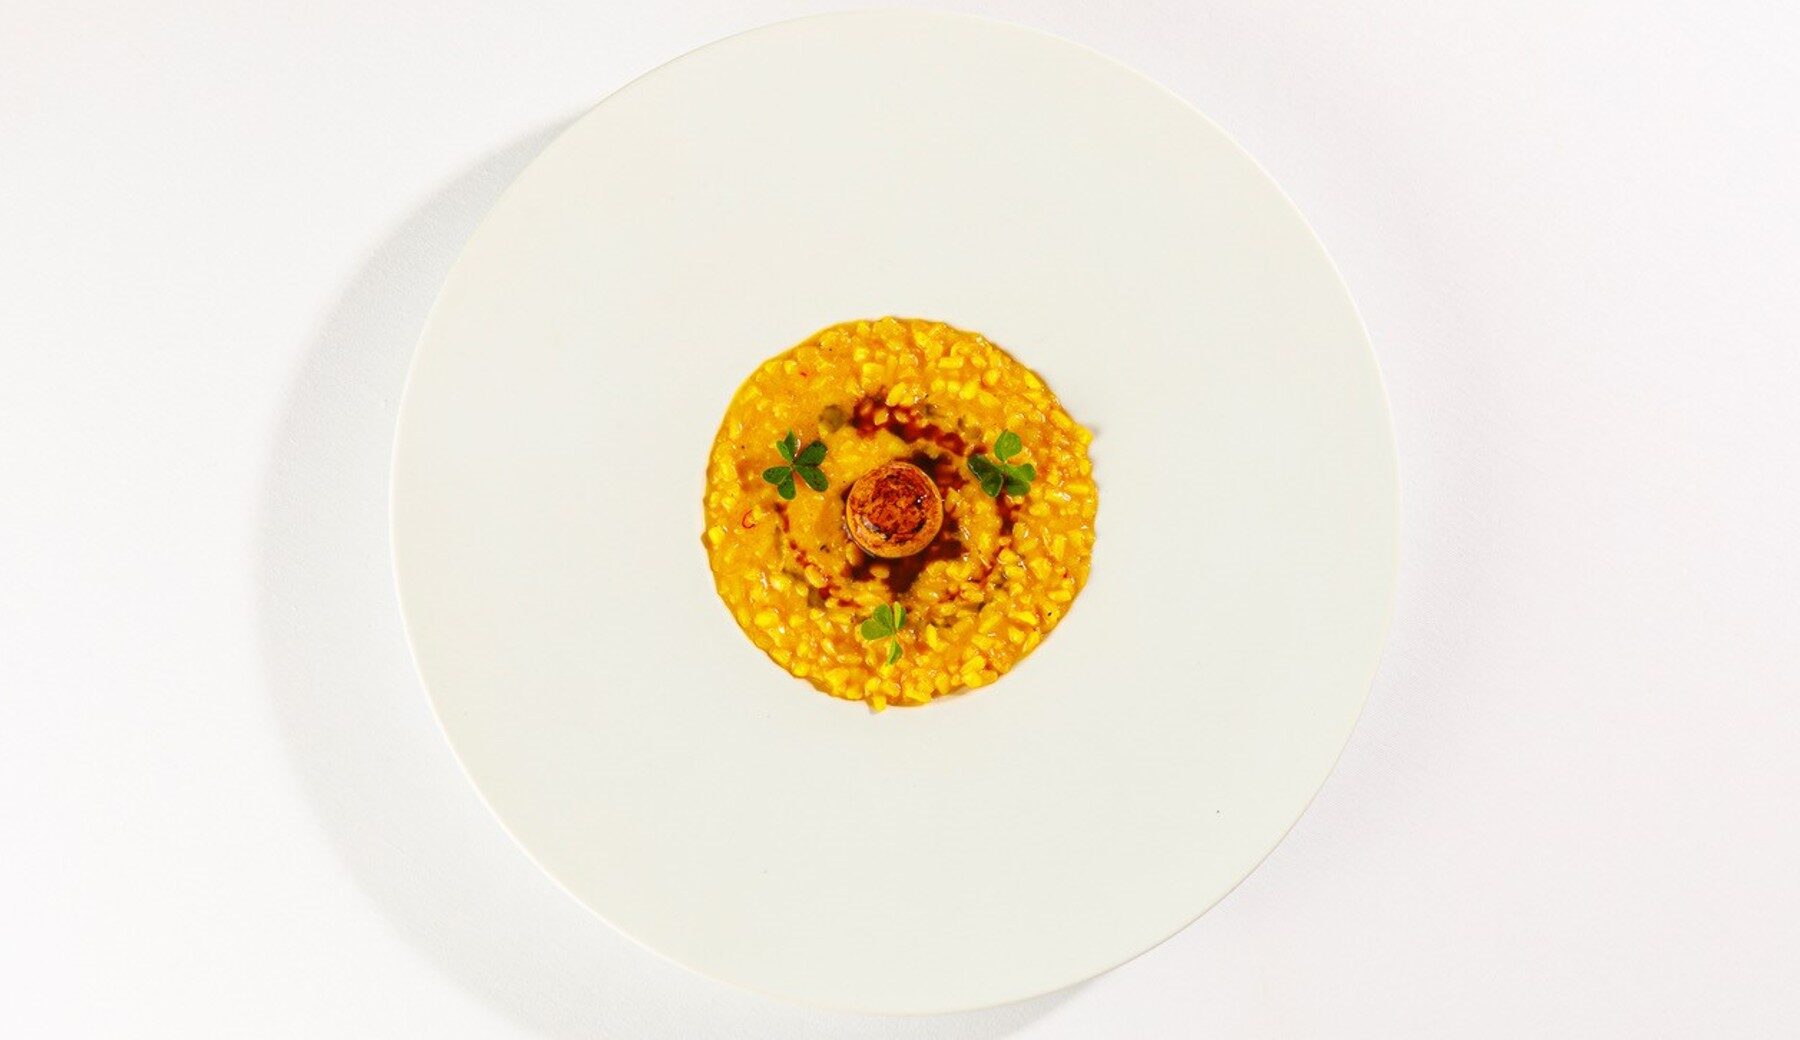 La ricetta del “Riso” di calamaro, midollo e burro di Andrea Antonini